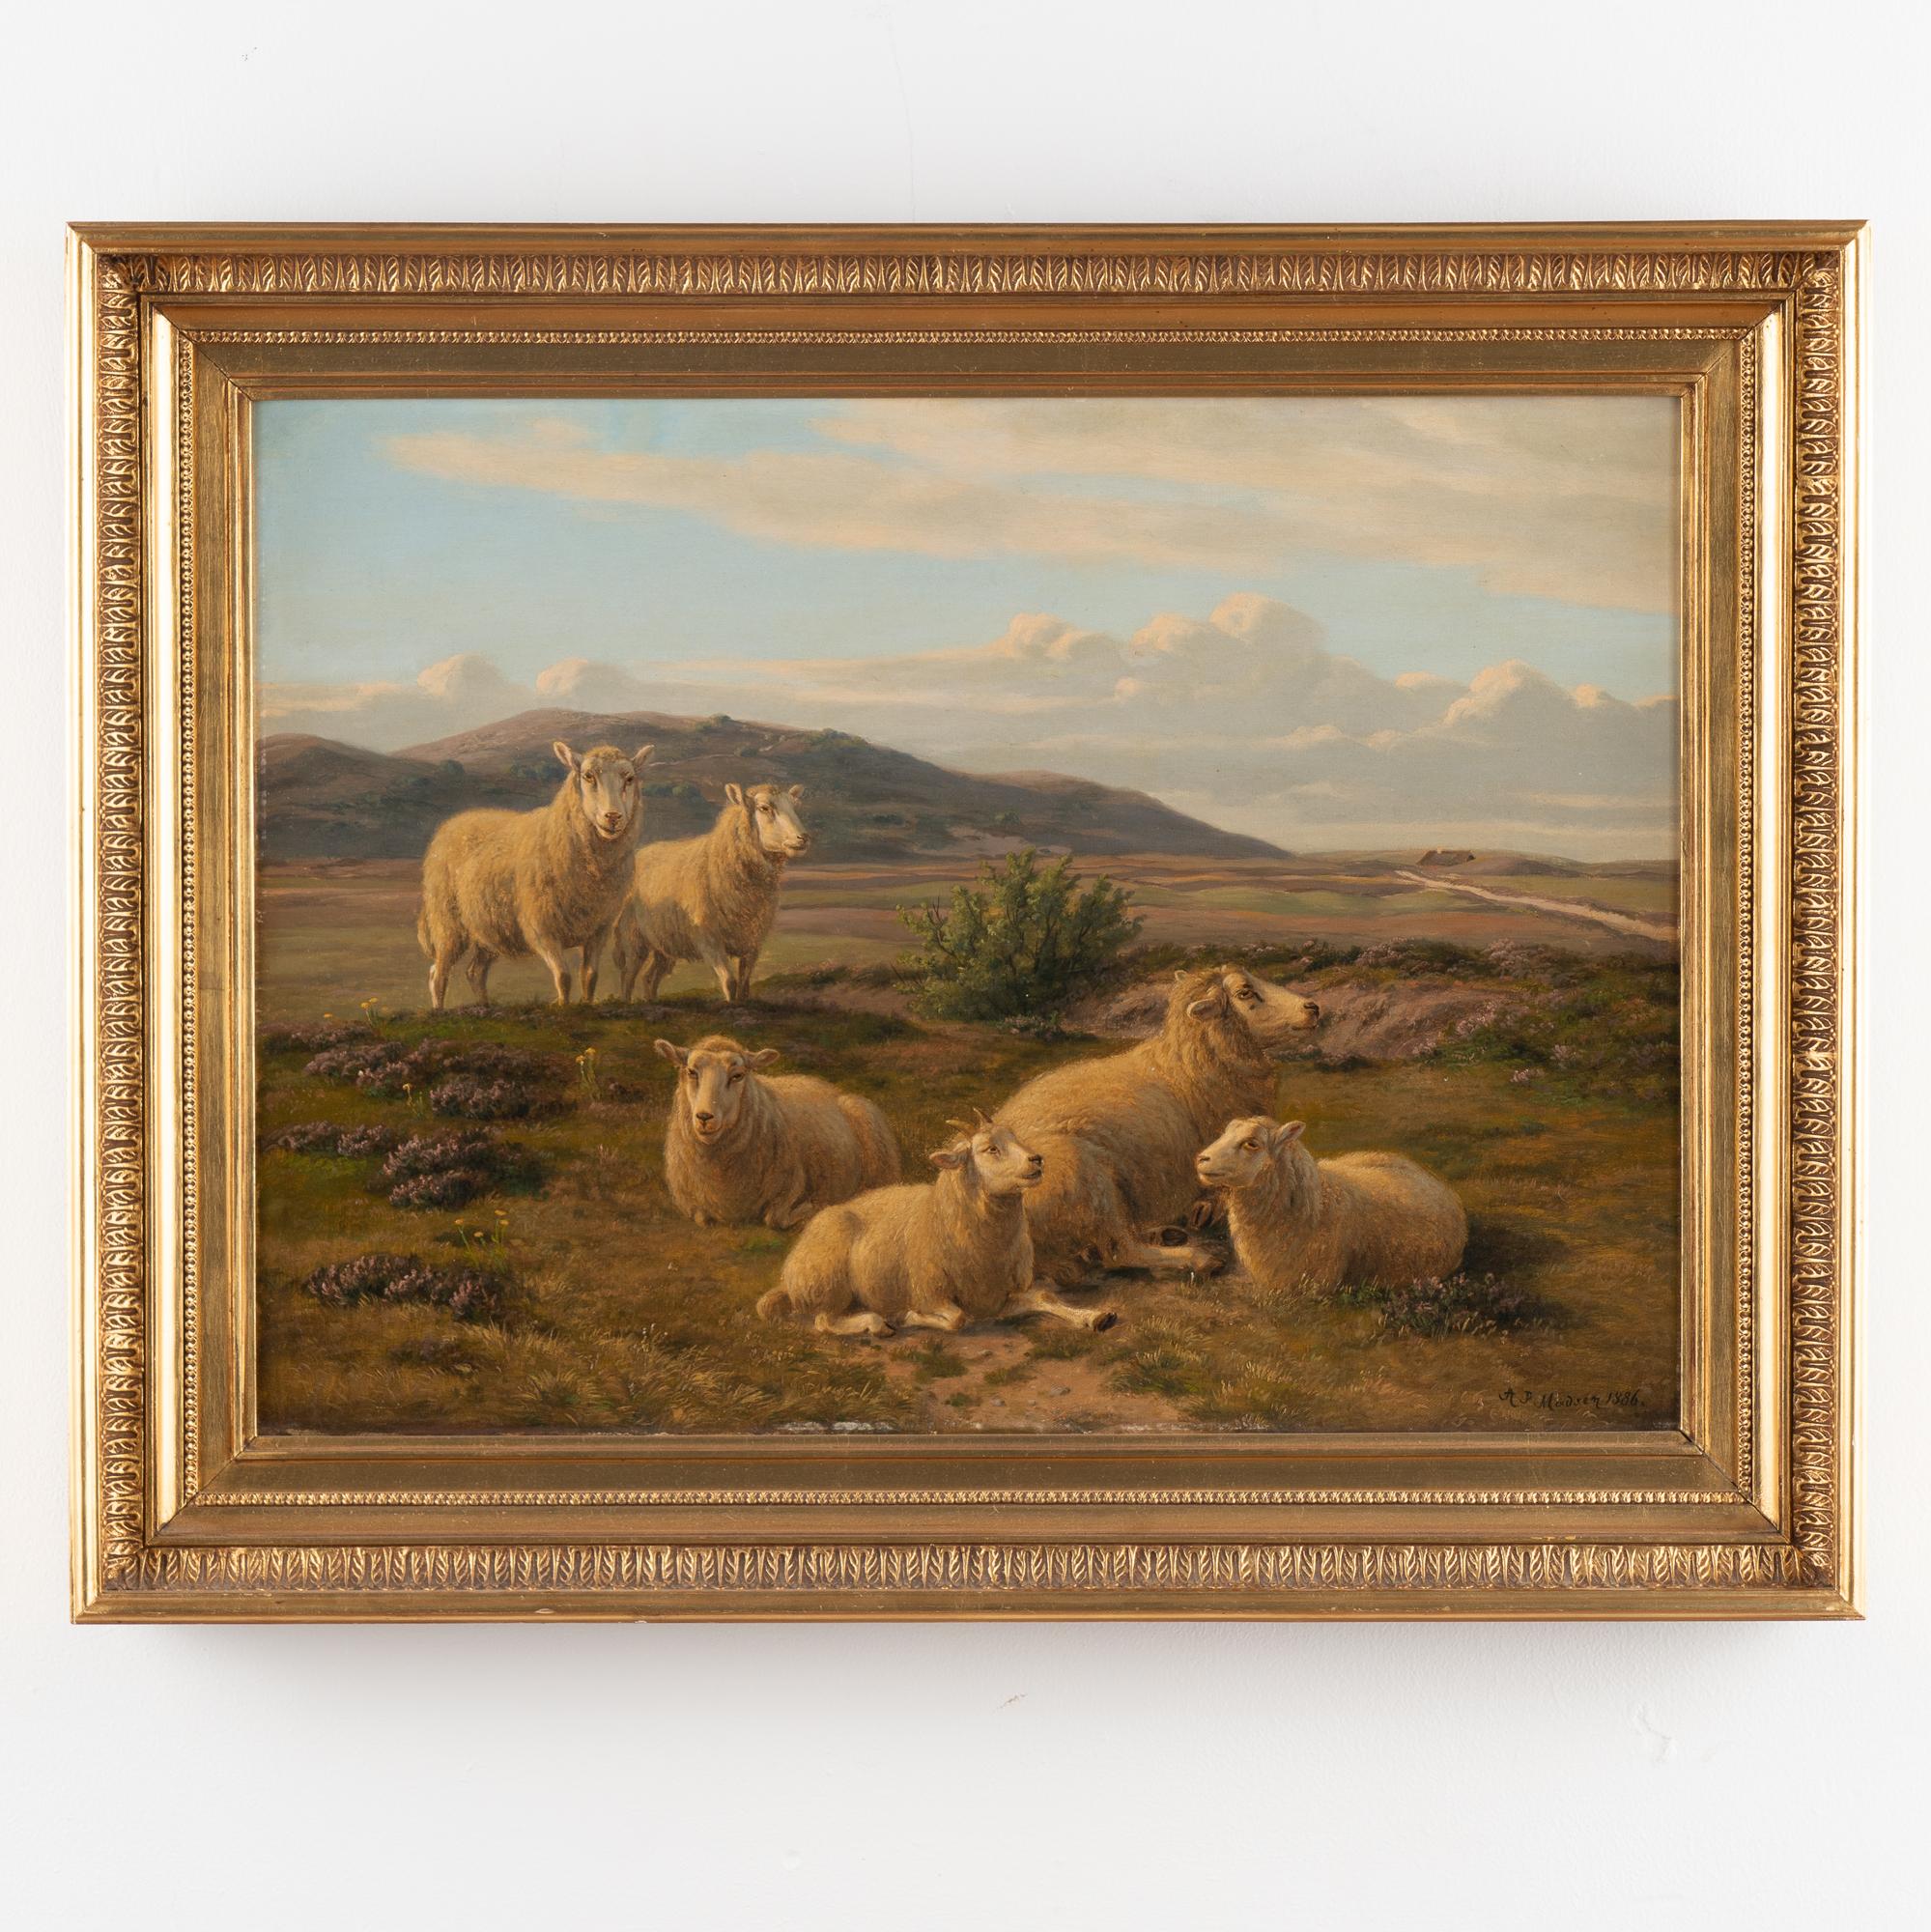 Huile originale sur toile représentant un paysage naturel de moutons paissant parmi des bruyères à flanc de colline. 
Signé et daté 1886 par A.P. Madsen.
Toile en très bon état pour son âge, quelques éraflures sur les bords du cadre.
La mesure est